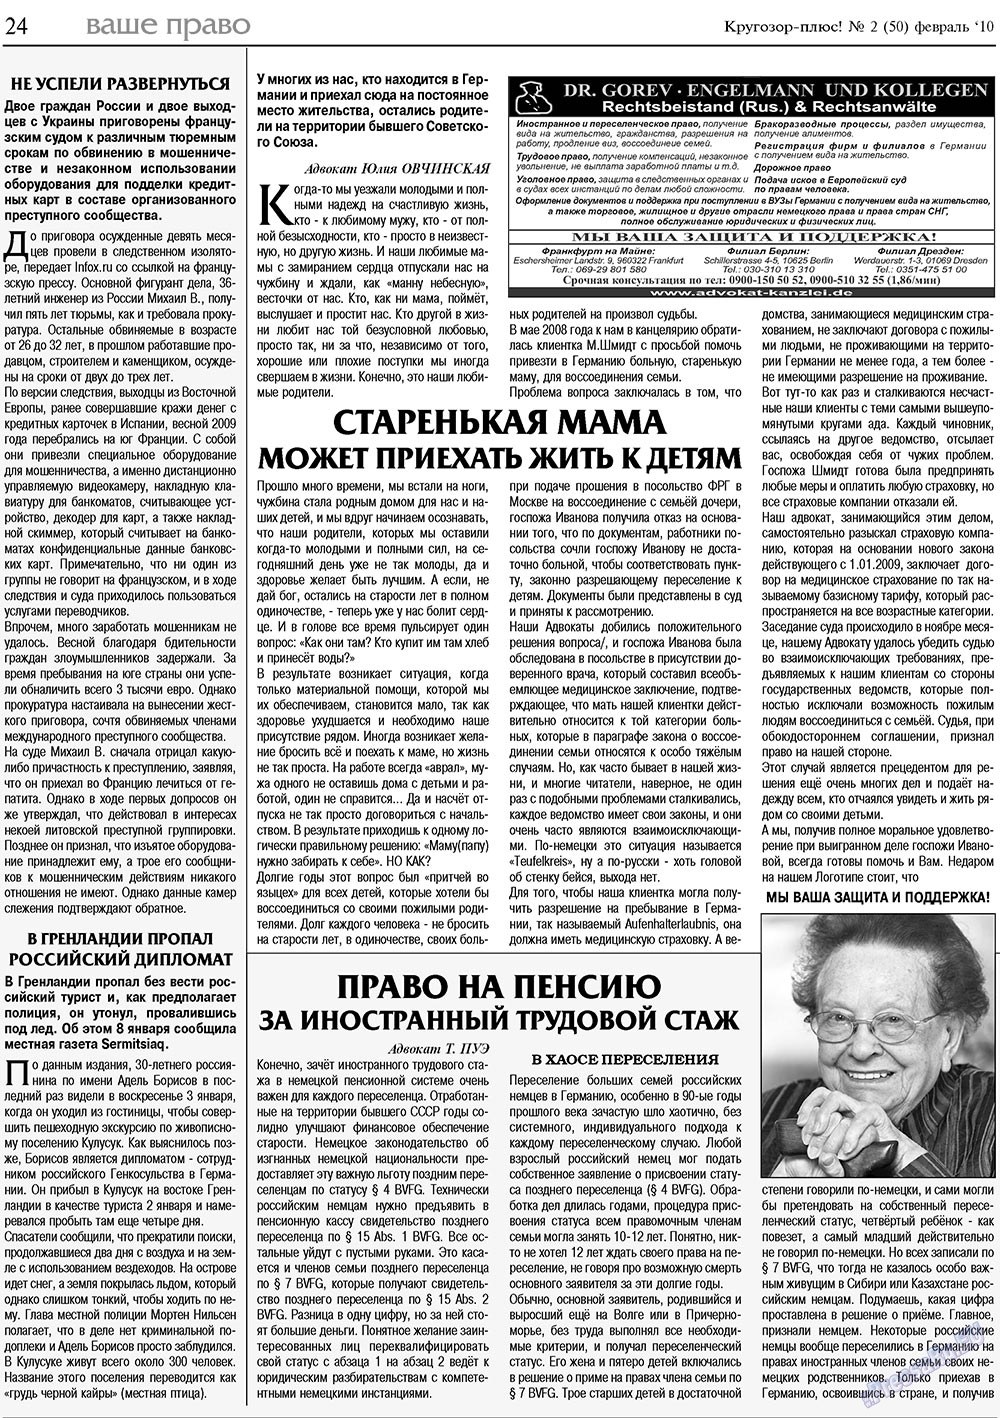 Кругозор плюс!, газета. 2010 №2 стр.24